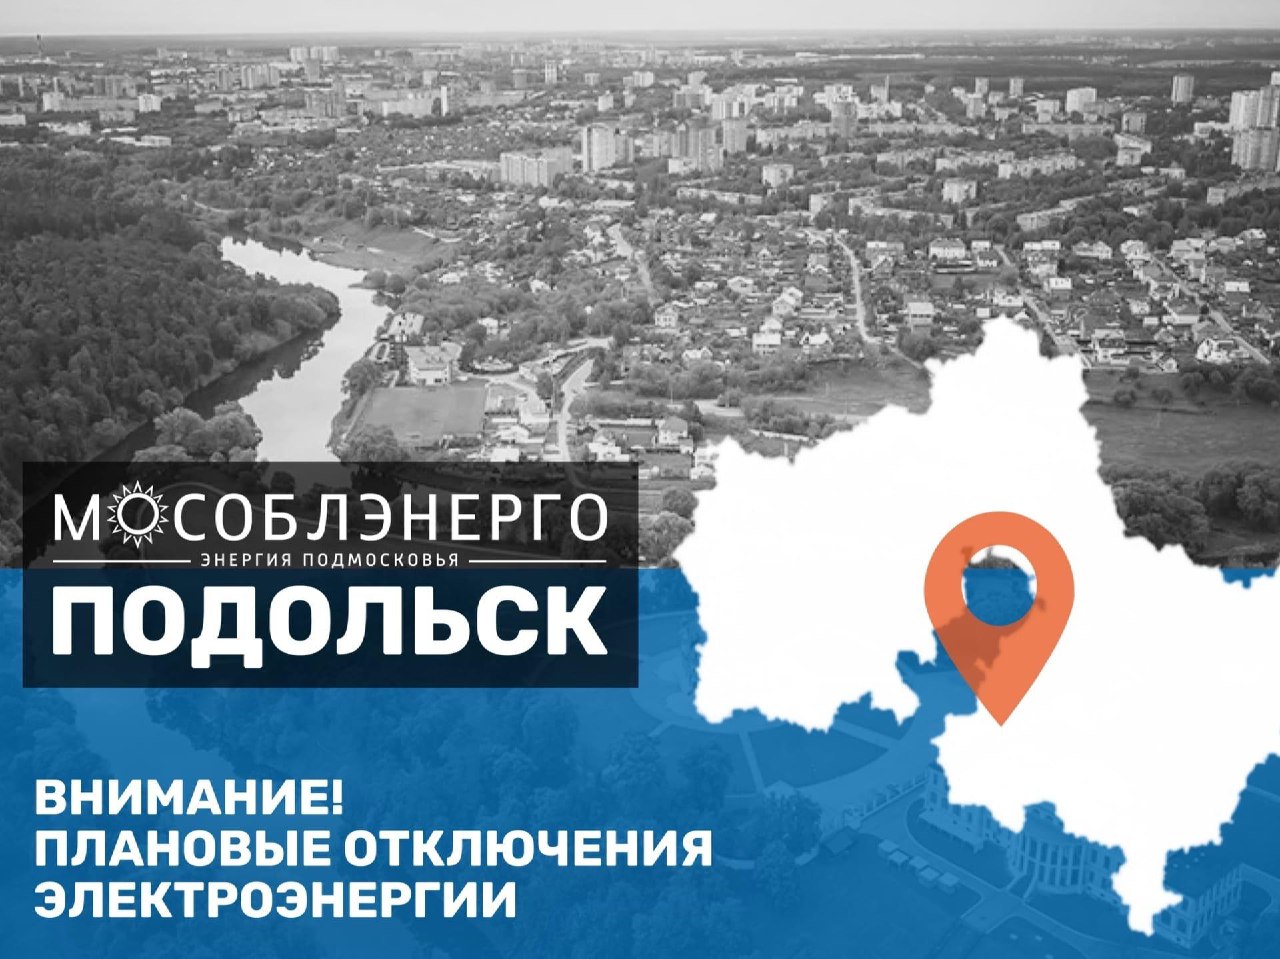 Плановое отключение электроэнергии в Подольске 13 февраля